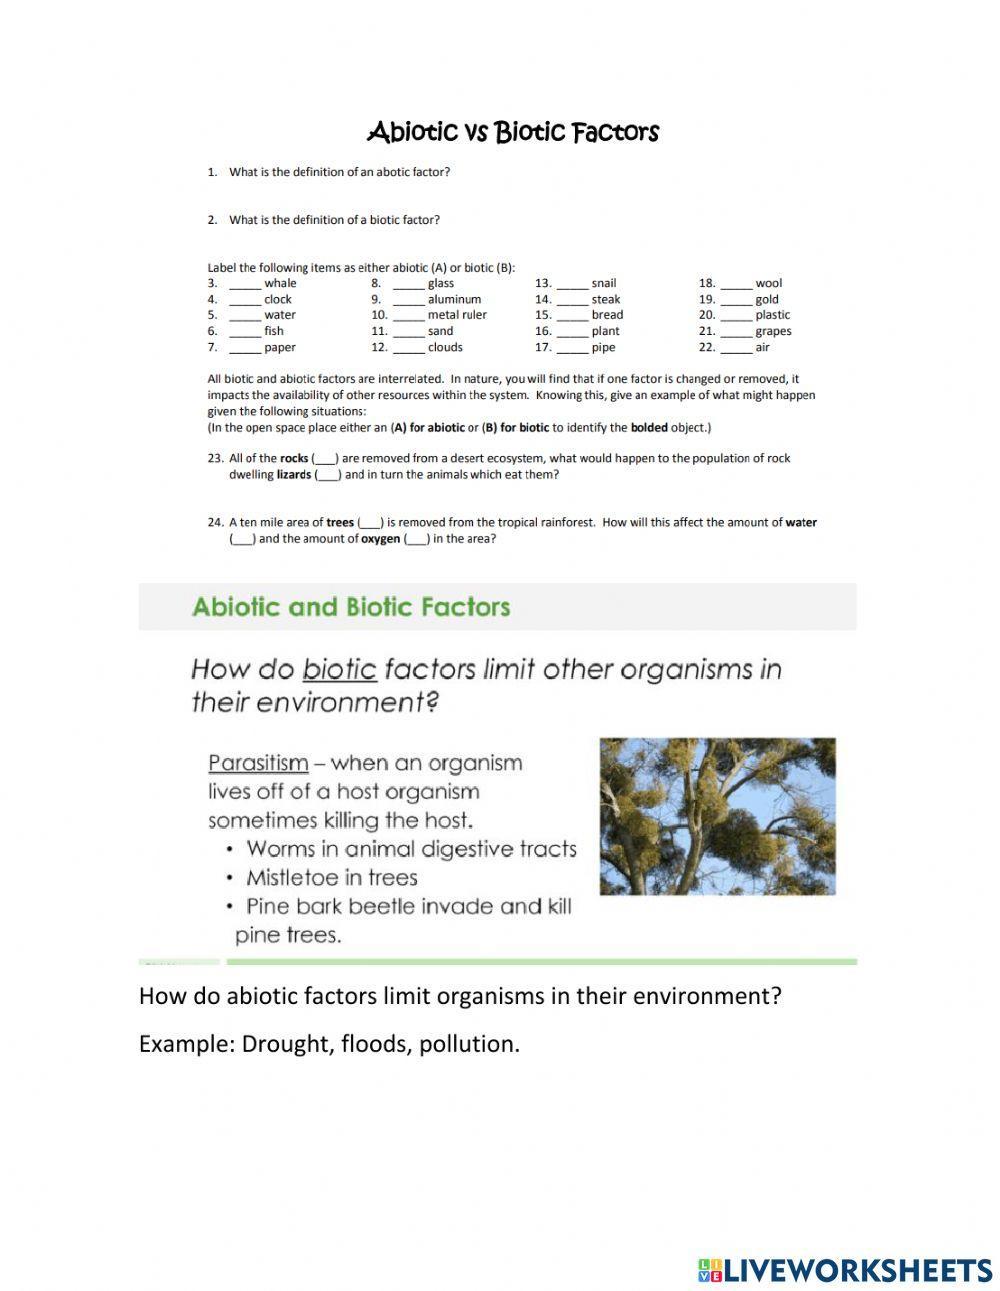 Biotic and abiotic factors